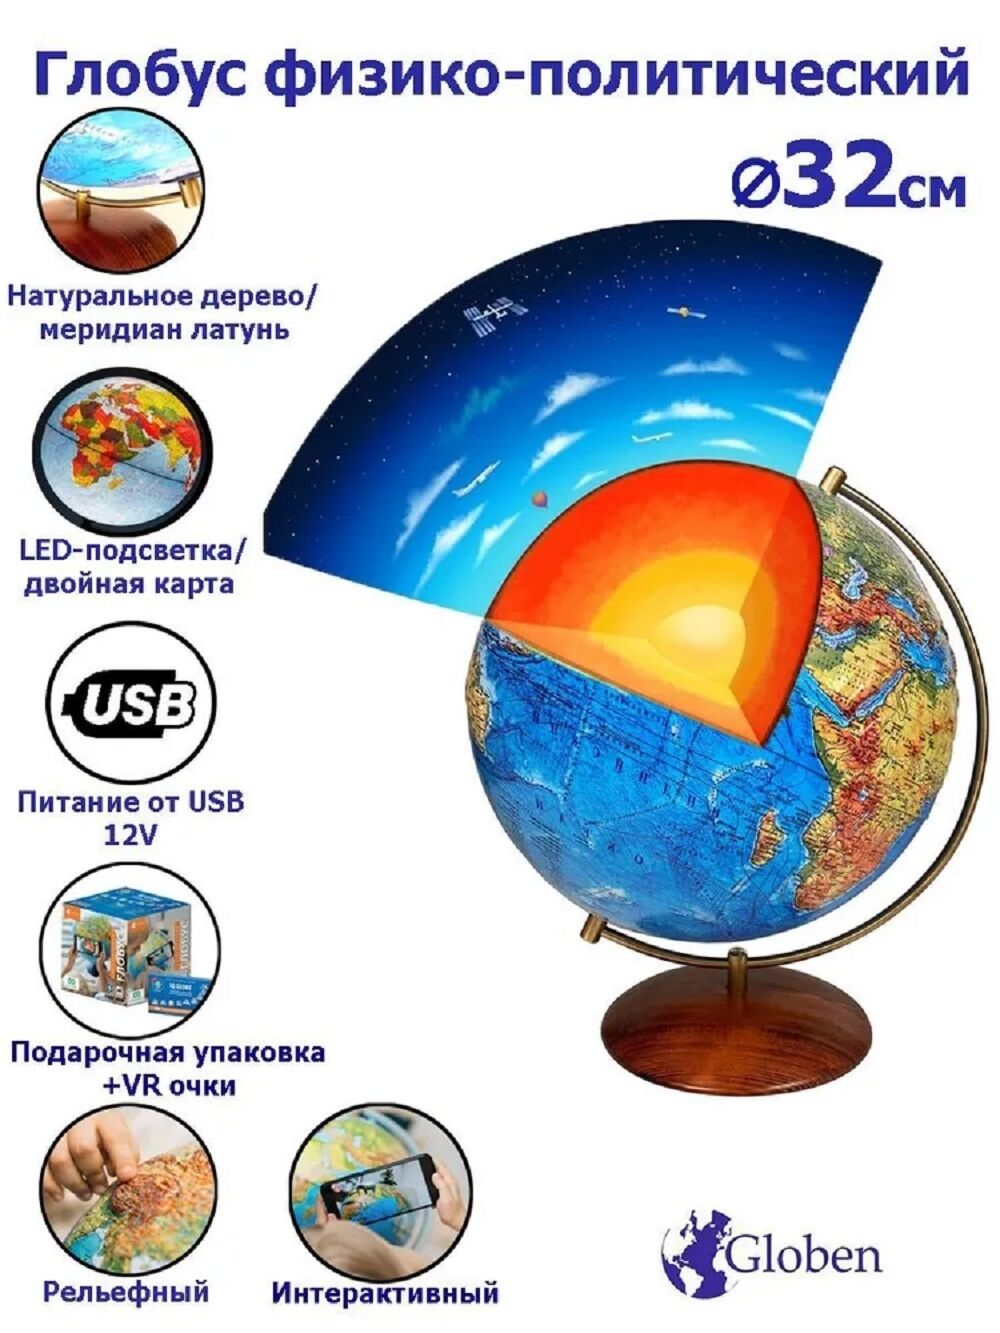 Интерактивный глобус Земли Globen физико-политический, рельефный, 320мм., на дерев.подставке, подсветка USB ++ VR очки